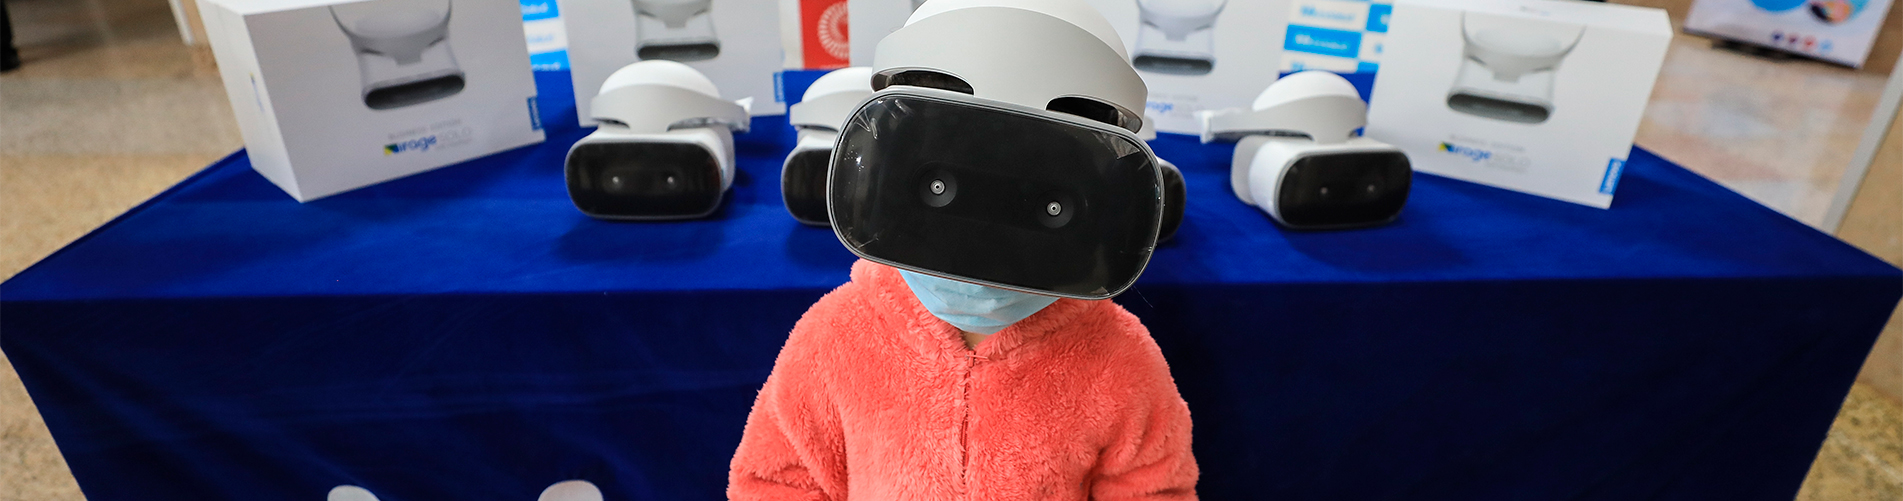 fundacion wiese entrega innovadores kits de realidad virtual